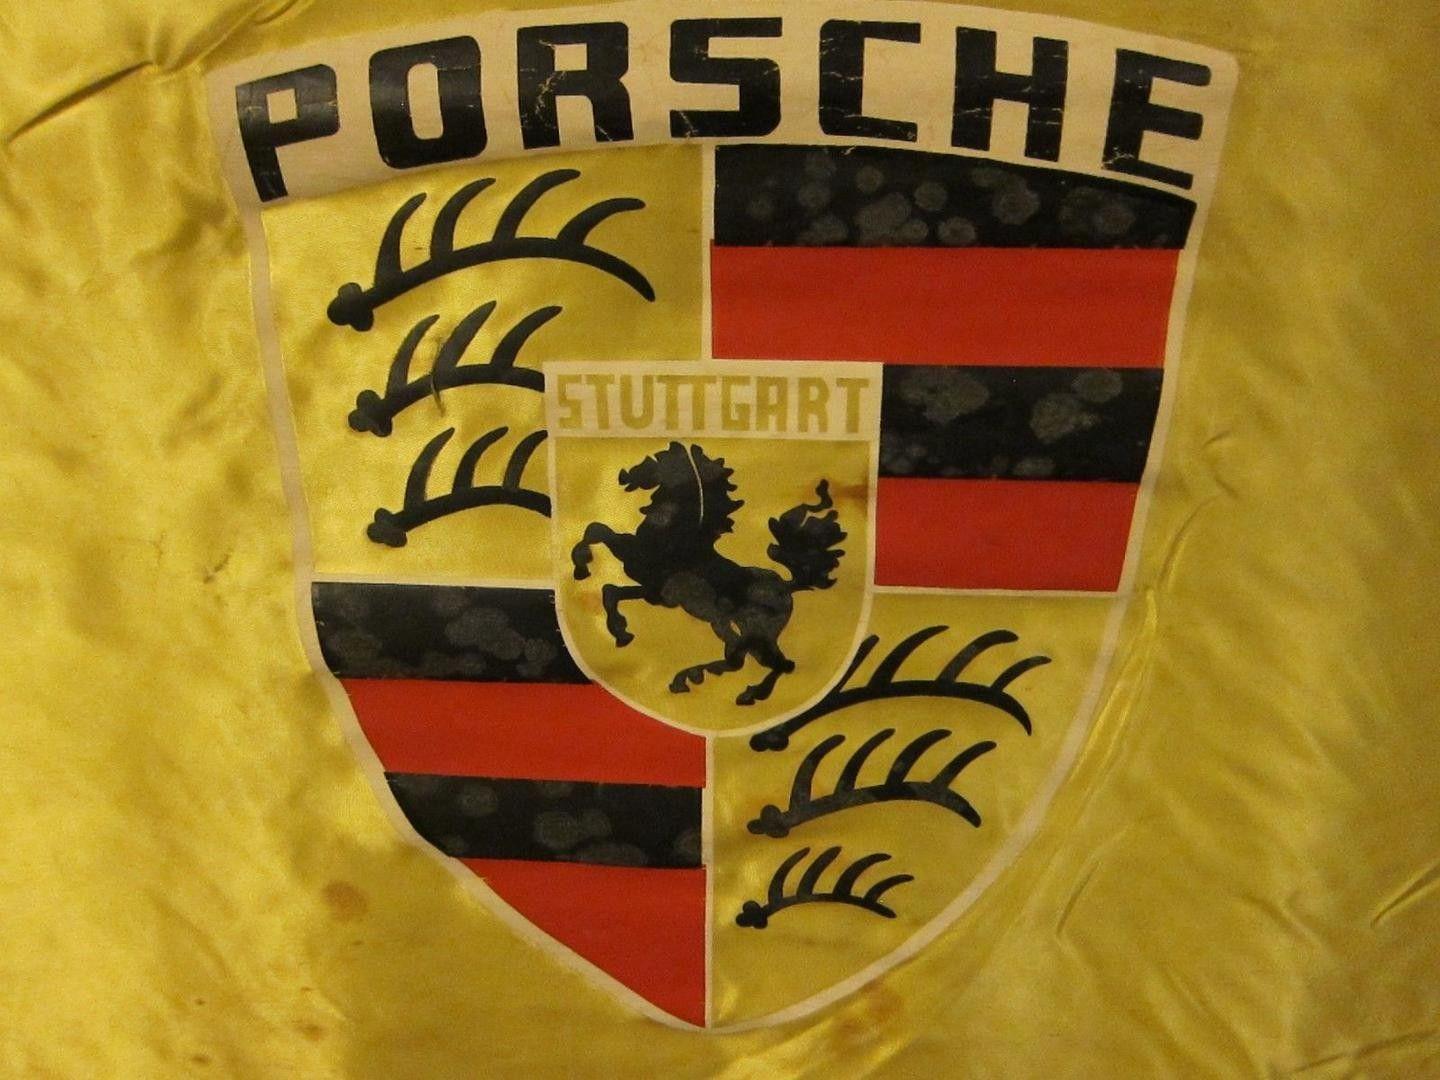 Old Porsche Logo - OLD VINTAGE PORSCHE LOGO SHIELD FLAG SPORT CAR DEALER SIGN BANNER